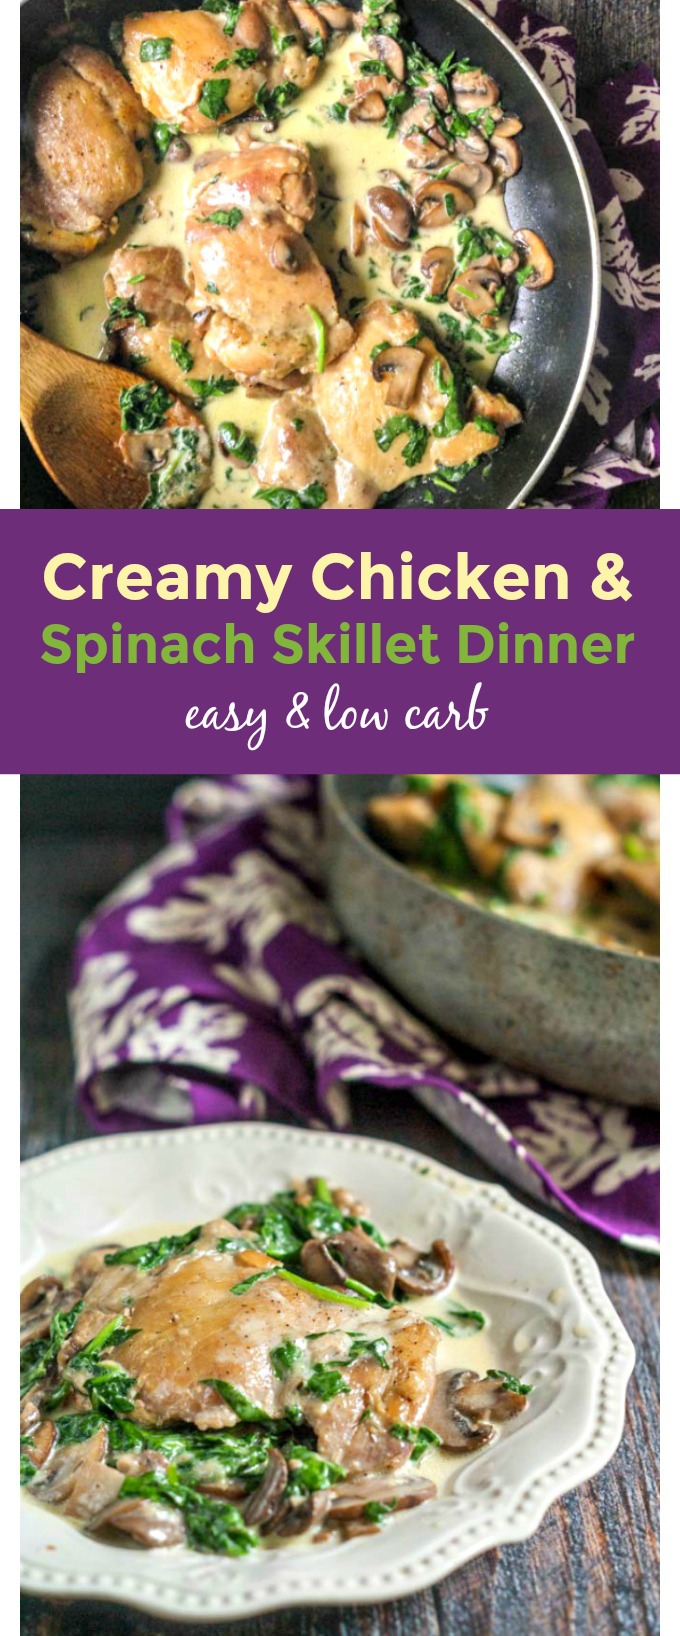 creamy chicken skillet dinner with spinach